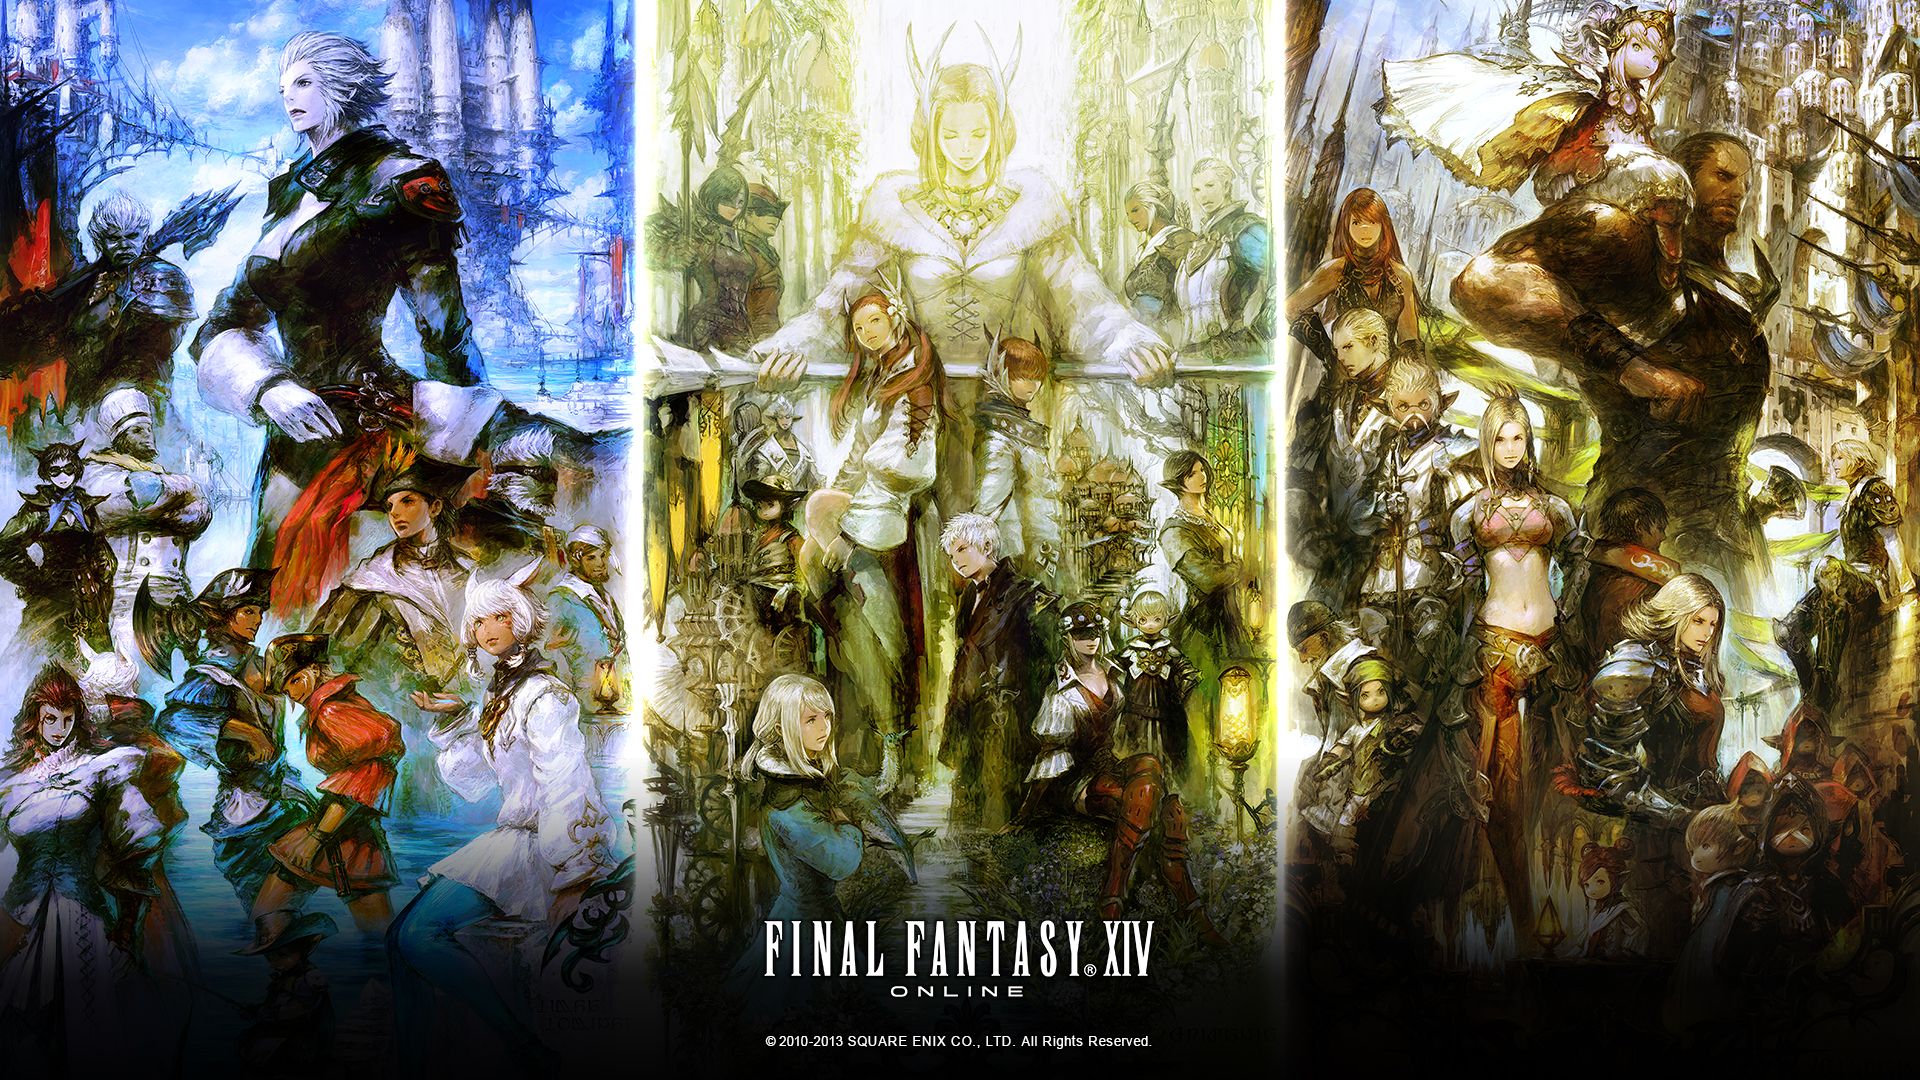 FFXIV 01. Final fantasy xiv, Game art, Final fantasy art